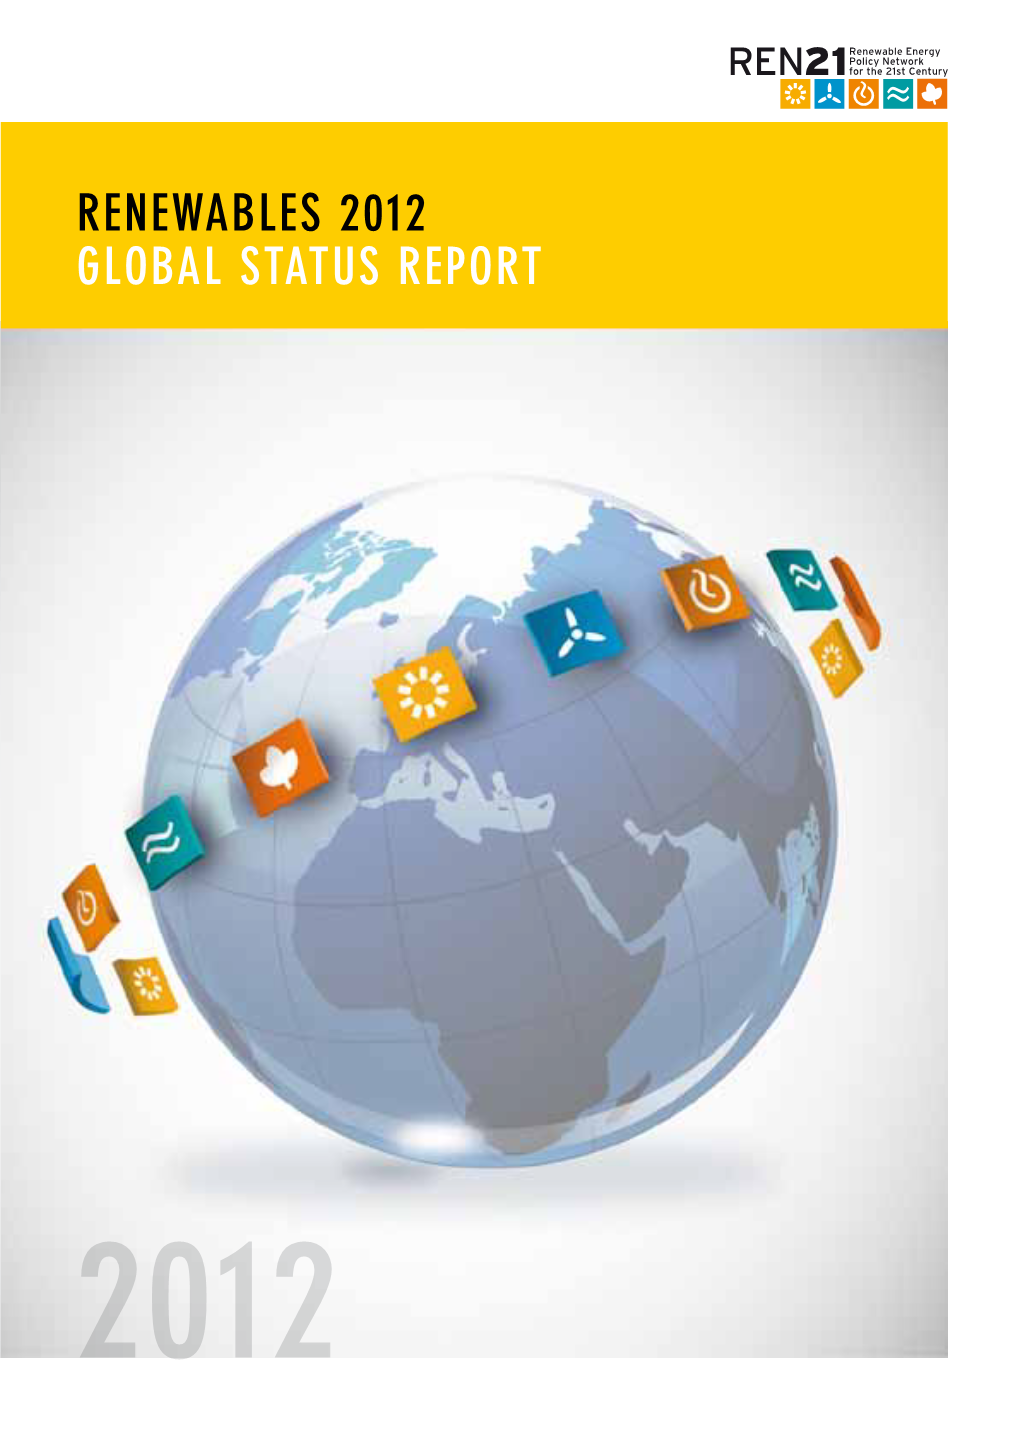 Renewables 2012 GLOBAL STATUS REPORT